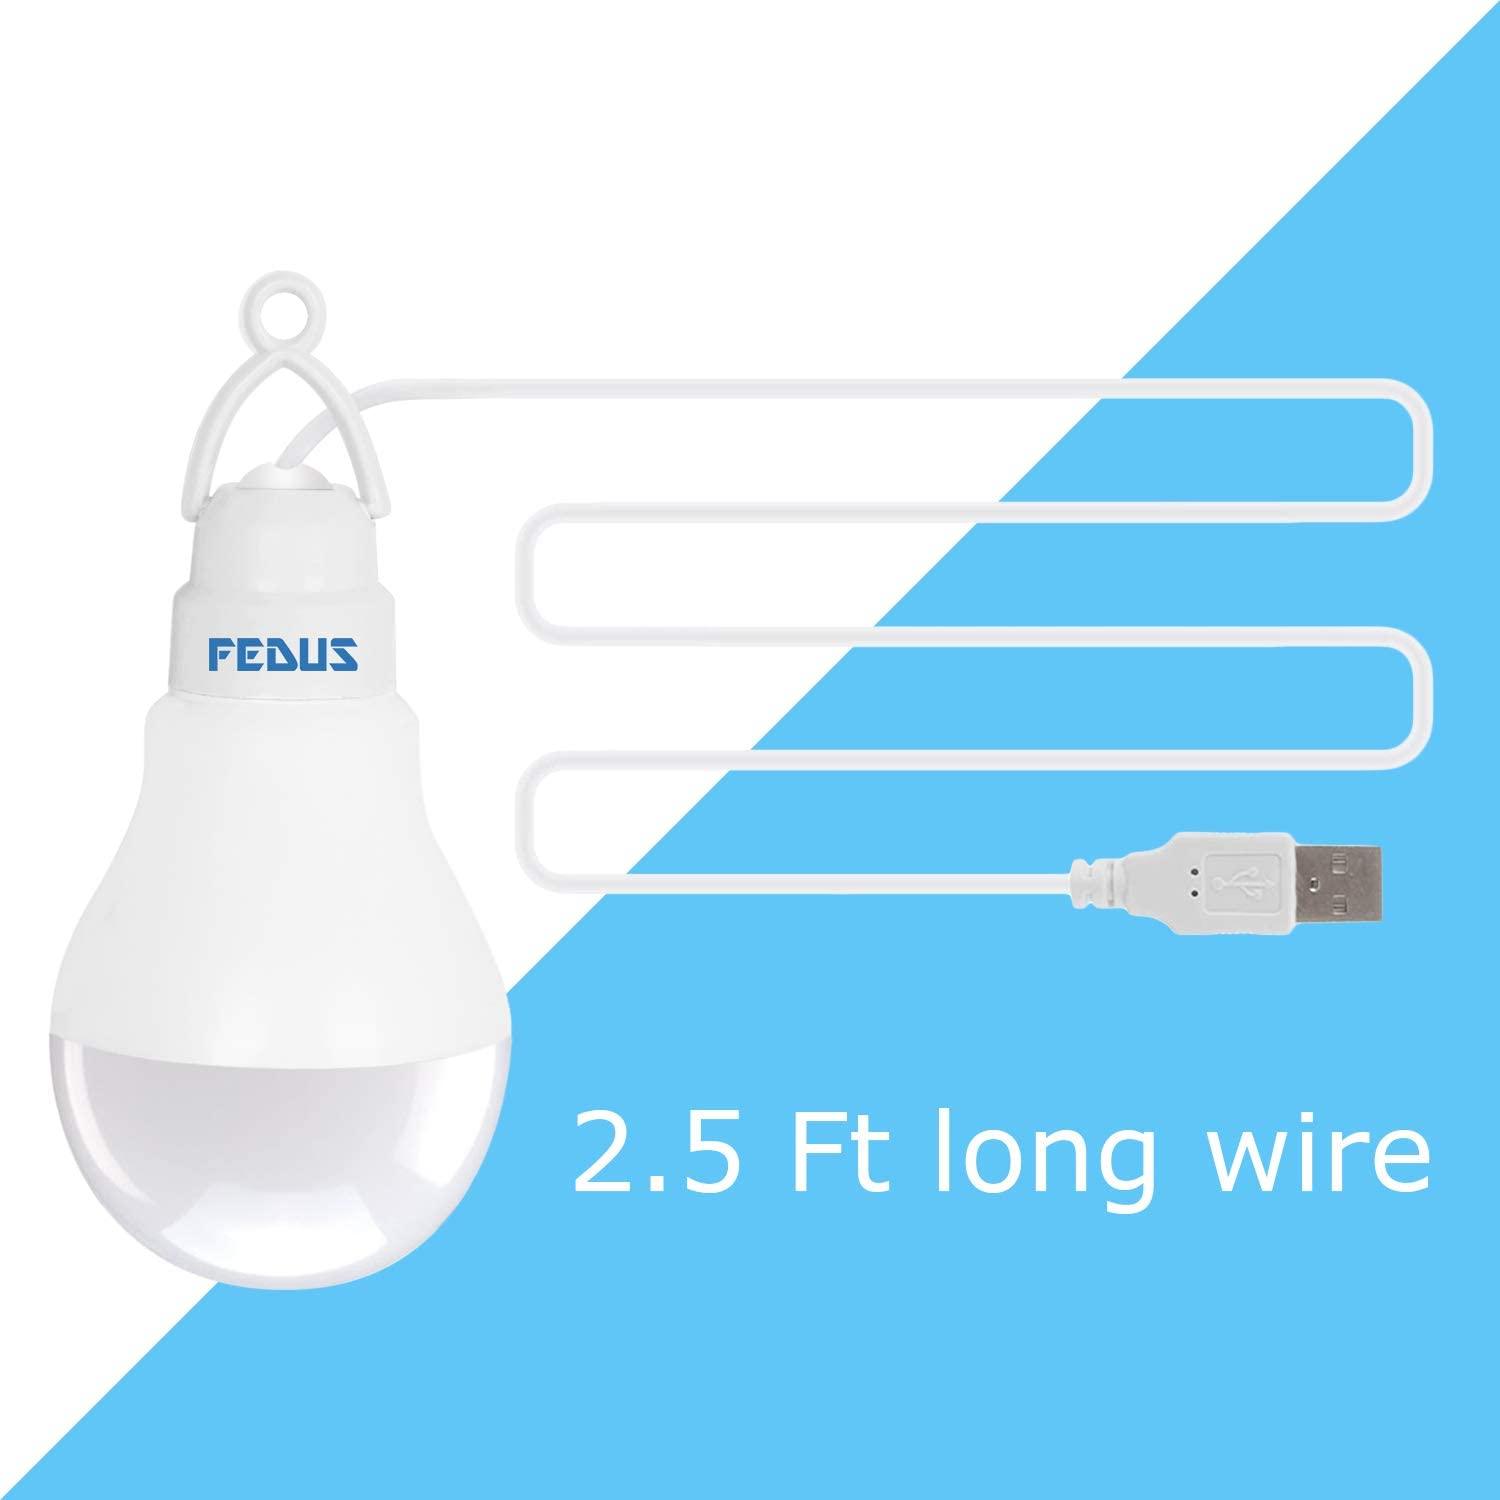 FEDUS USB Bulb for Power Bank, USB led Light for Power Bank, USB Light for  Mobile Lamp/LED USB Bulb Mini LED Night Light led Portable Light - White